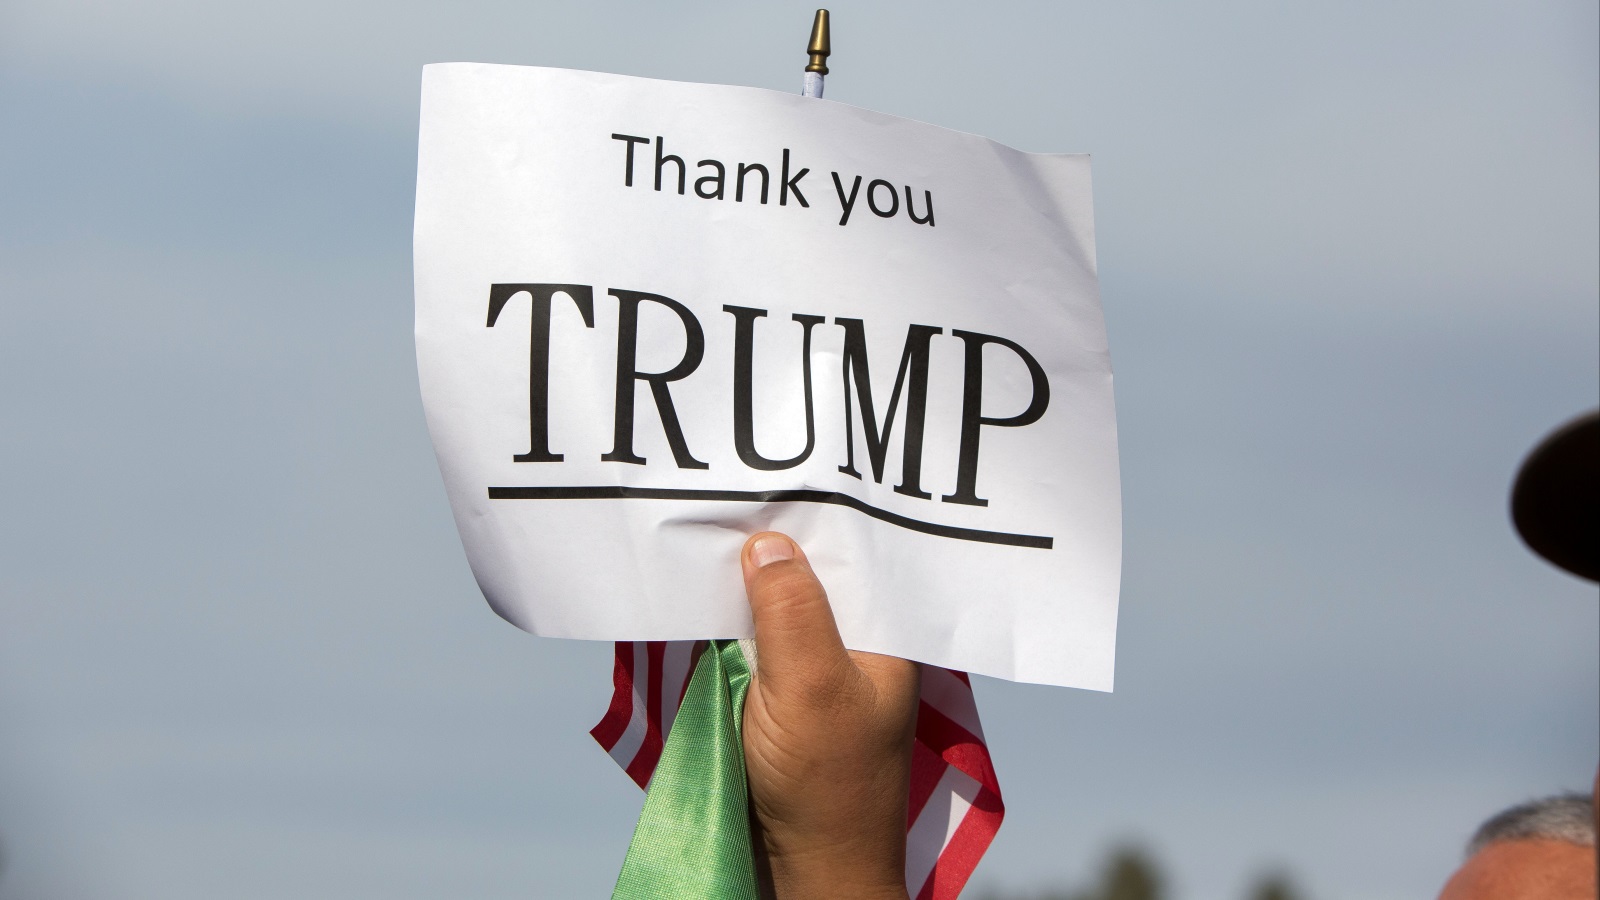   إيراني مقيم في الولايات المتحدة يرفع لافتة شكر لترمب خلال مظاهرة مناهضة للنظام الإيراني في لوس أنجلوس (رويترز)